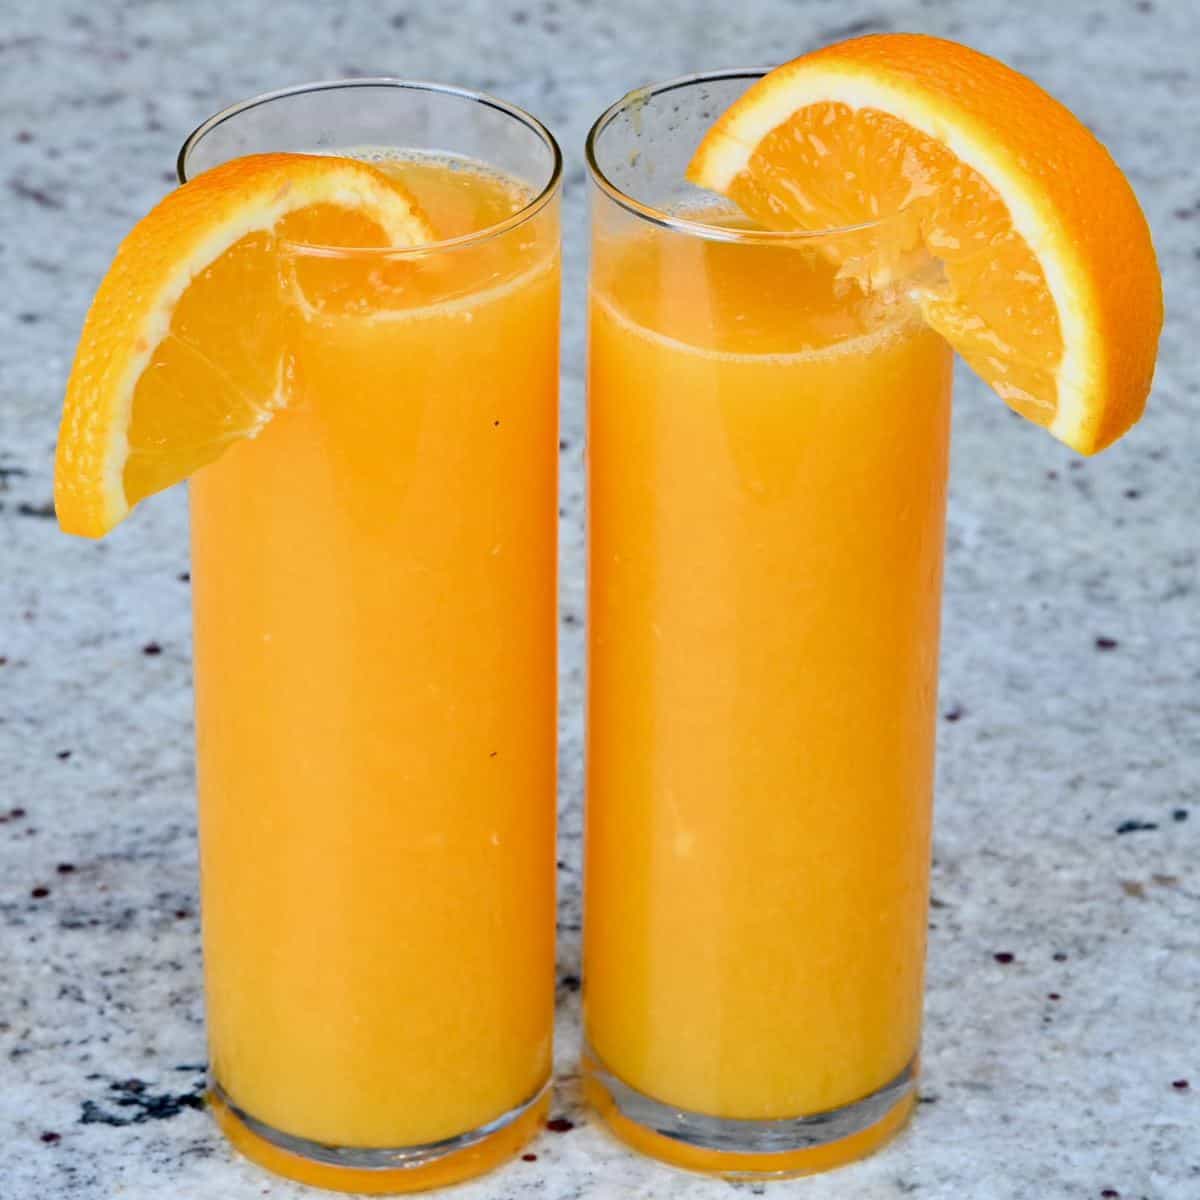 Feel the Peel' Orange Juicer Makes Cups from Peels